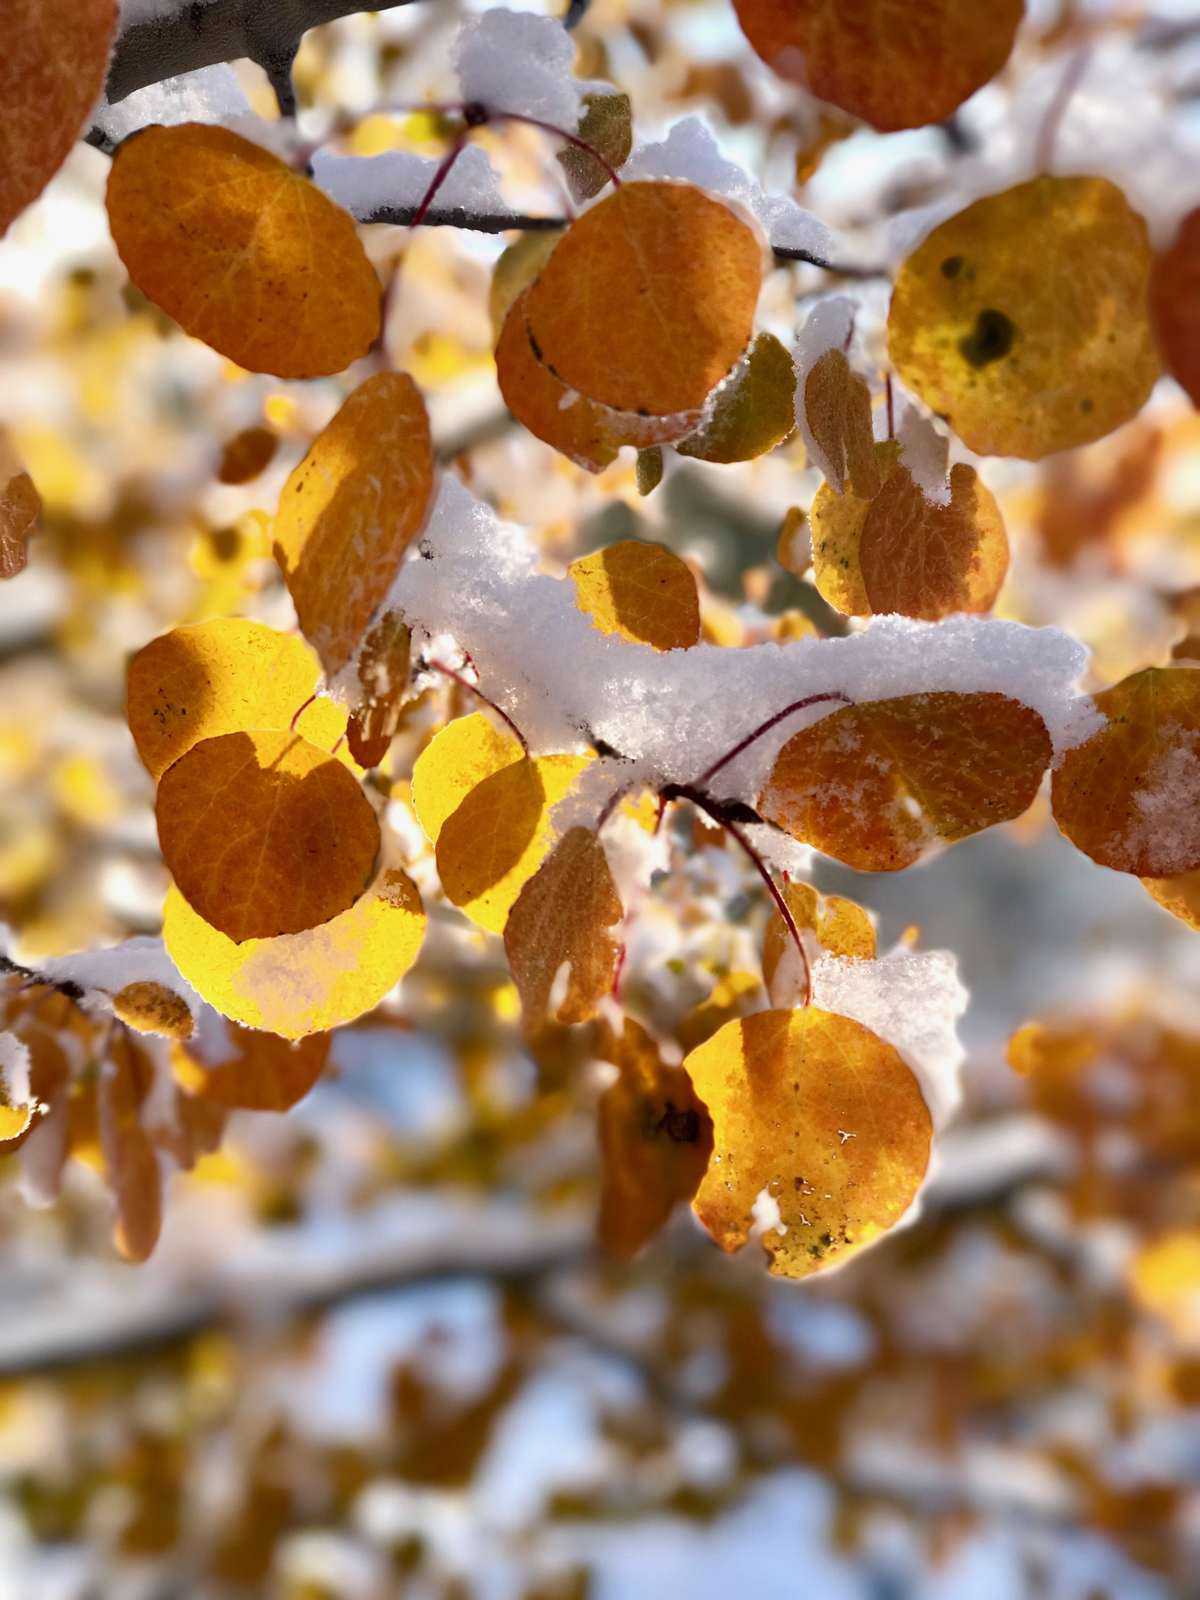 Snow Covered Fall Leaves | halfbakedharvest.com @hbharvest